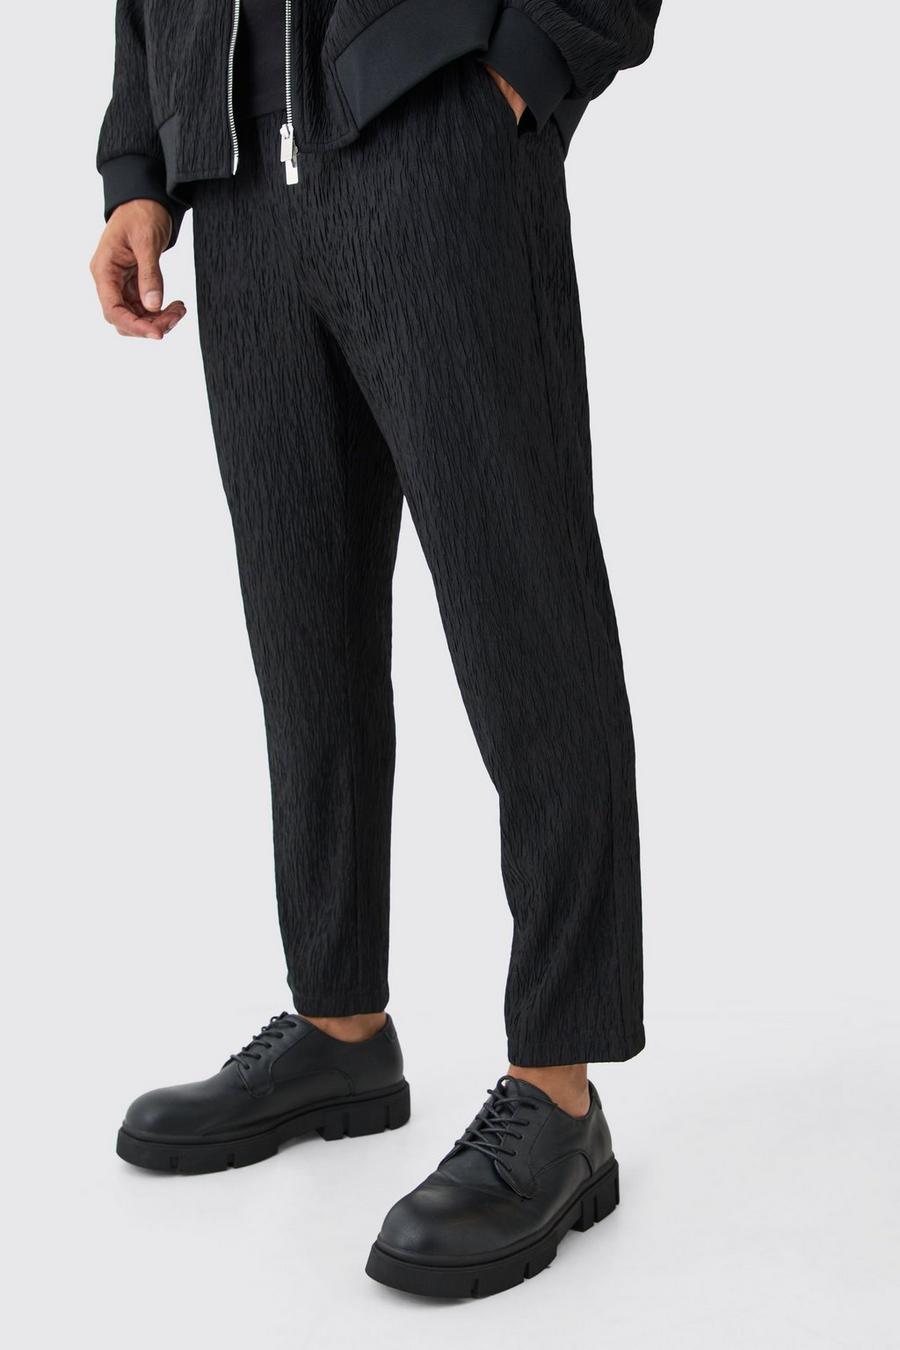 Pantalón texturizado ajustado elegante de raso, Black